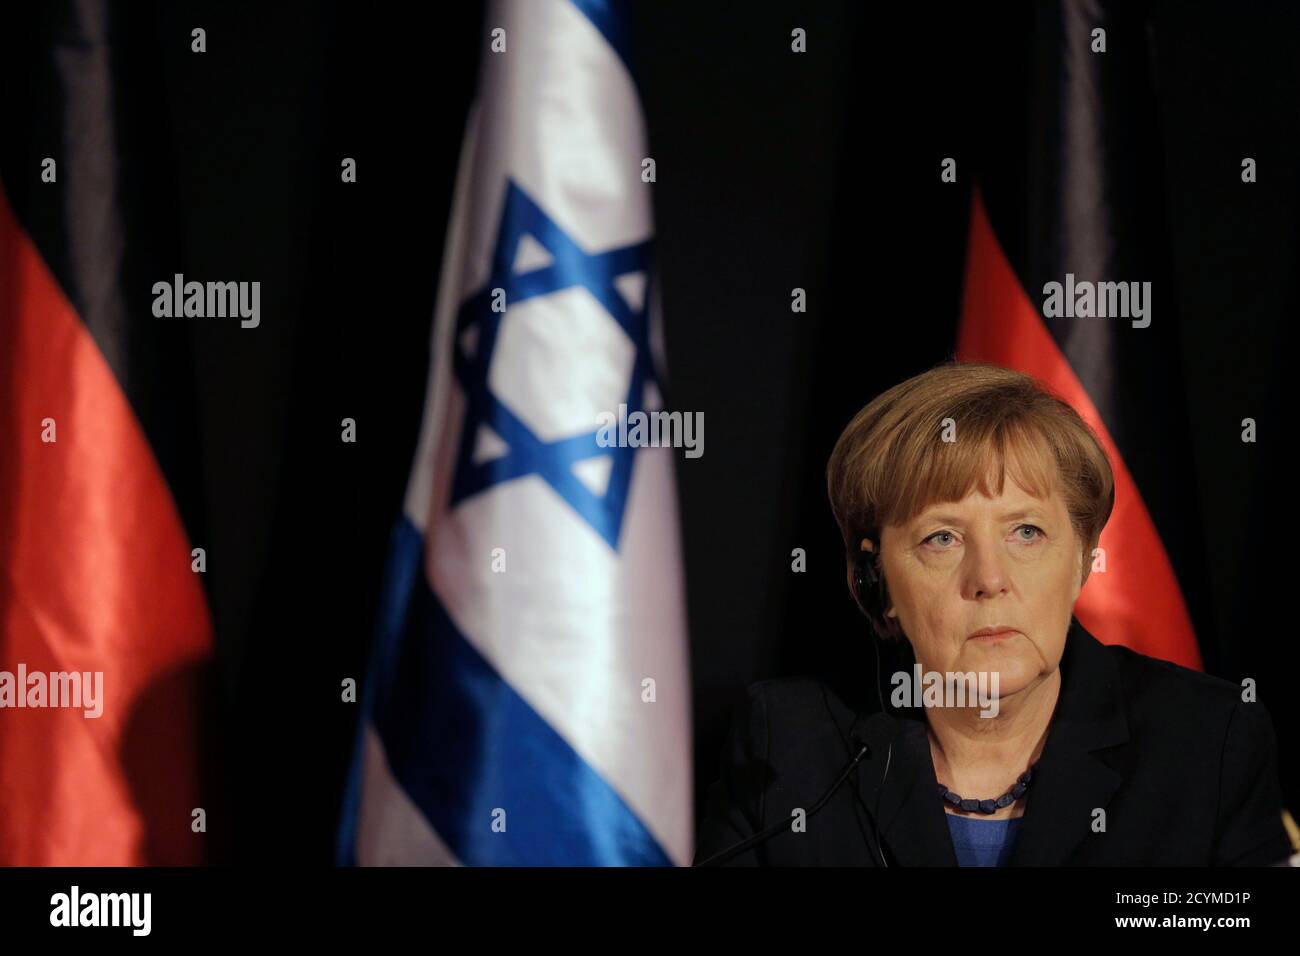 Bundeskanzlerin Angela Merkel nimmt an einer gemeinsamen Pressekonferenz mit Israels Premierminister Benjamin Netanyahu (nicht abgebildet) in Jerusalem 25. Februar 2014. Deutschland sieht Iran als eine potenzielle Bedrohung nicht nur für Israel, aber auch in europäische Länder, Merkel, sagte am Dienstag auf einer gemeinsamen Pressekonferenz mit Netanyahu. REUTERS/Ammar Awad (JERUSALEM - Tags: Politik Profil) Stockfoto